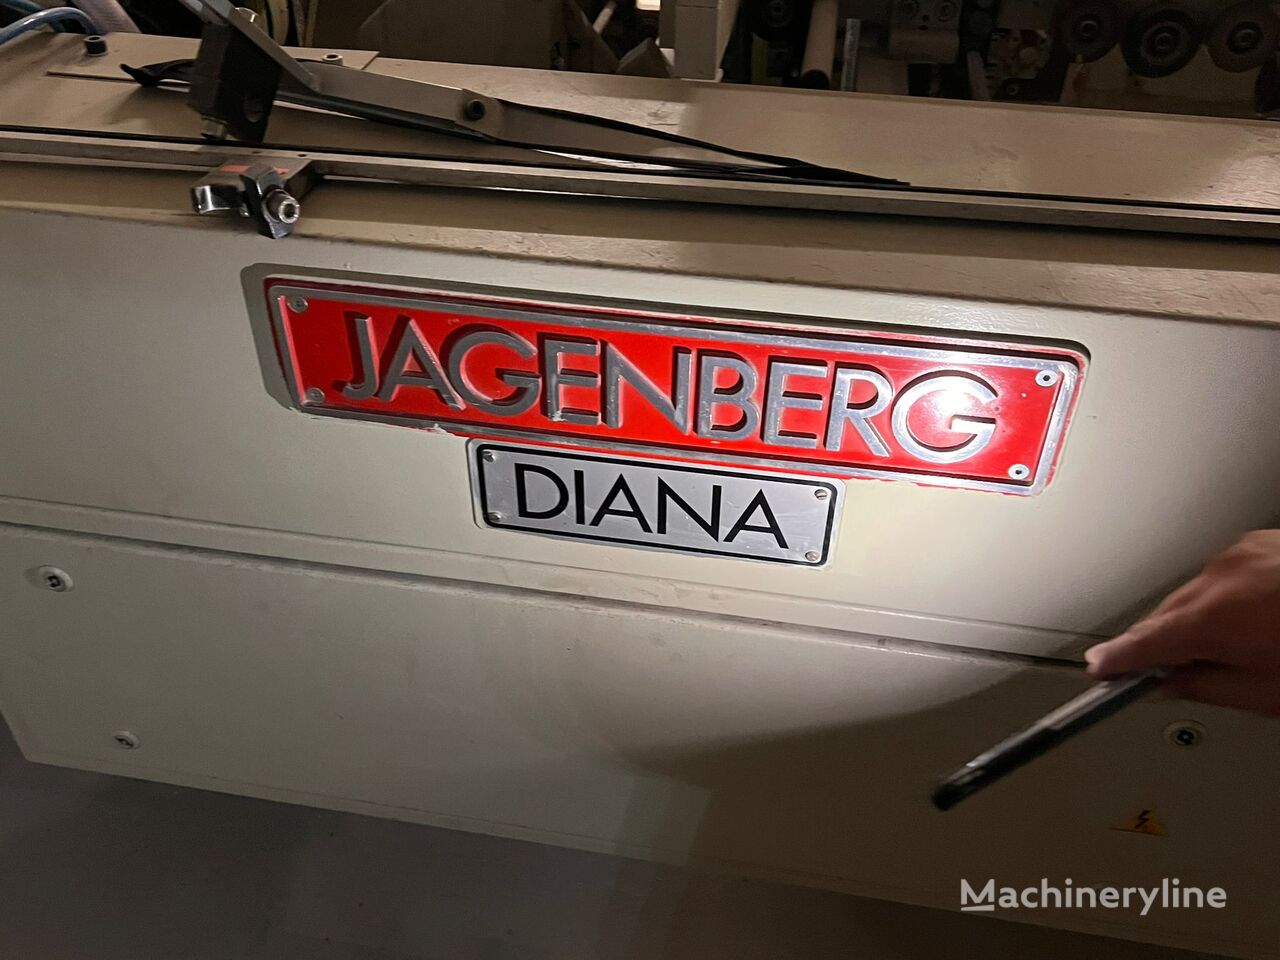 фальцевально-склеивающая машина Jagenberg Diana 90-1